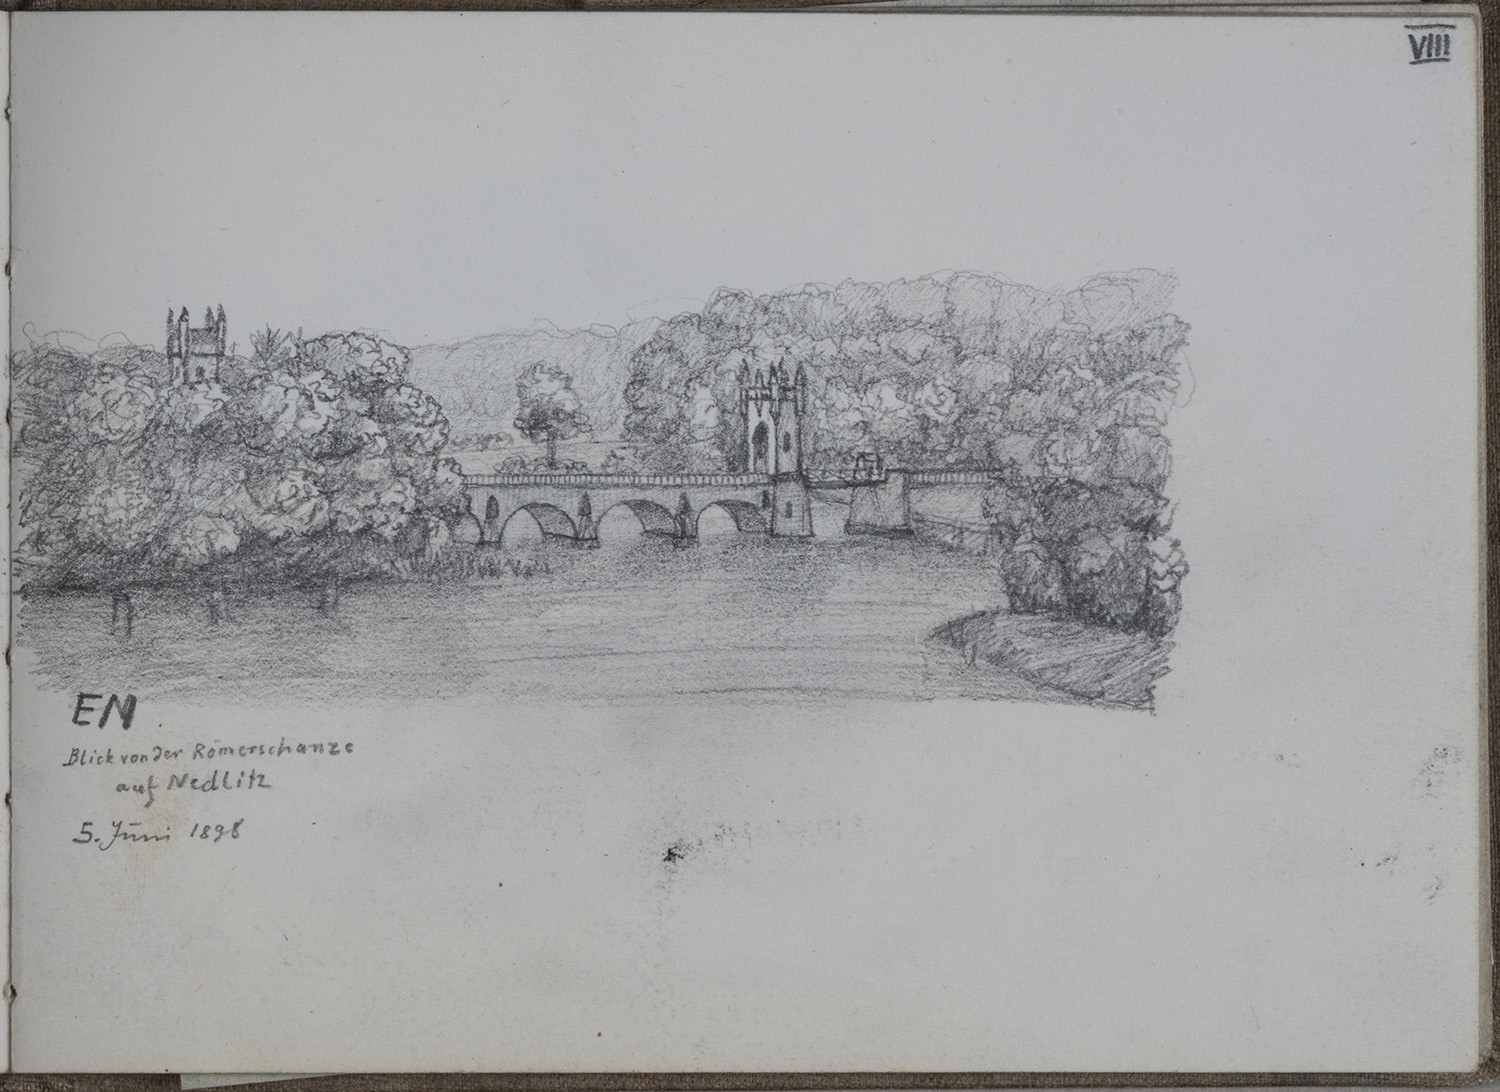 Potsdam-Nedlitz: Nedlitzer Brücke und Fähre (Skizzenbuch Ernst Morgenstern, Bl. VIII) (Landesgeschichtliche Vereinigung für die Mark Brandenburg e.V., Archiv CC BY)